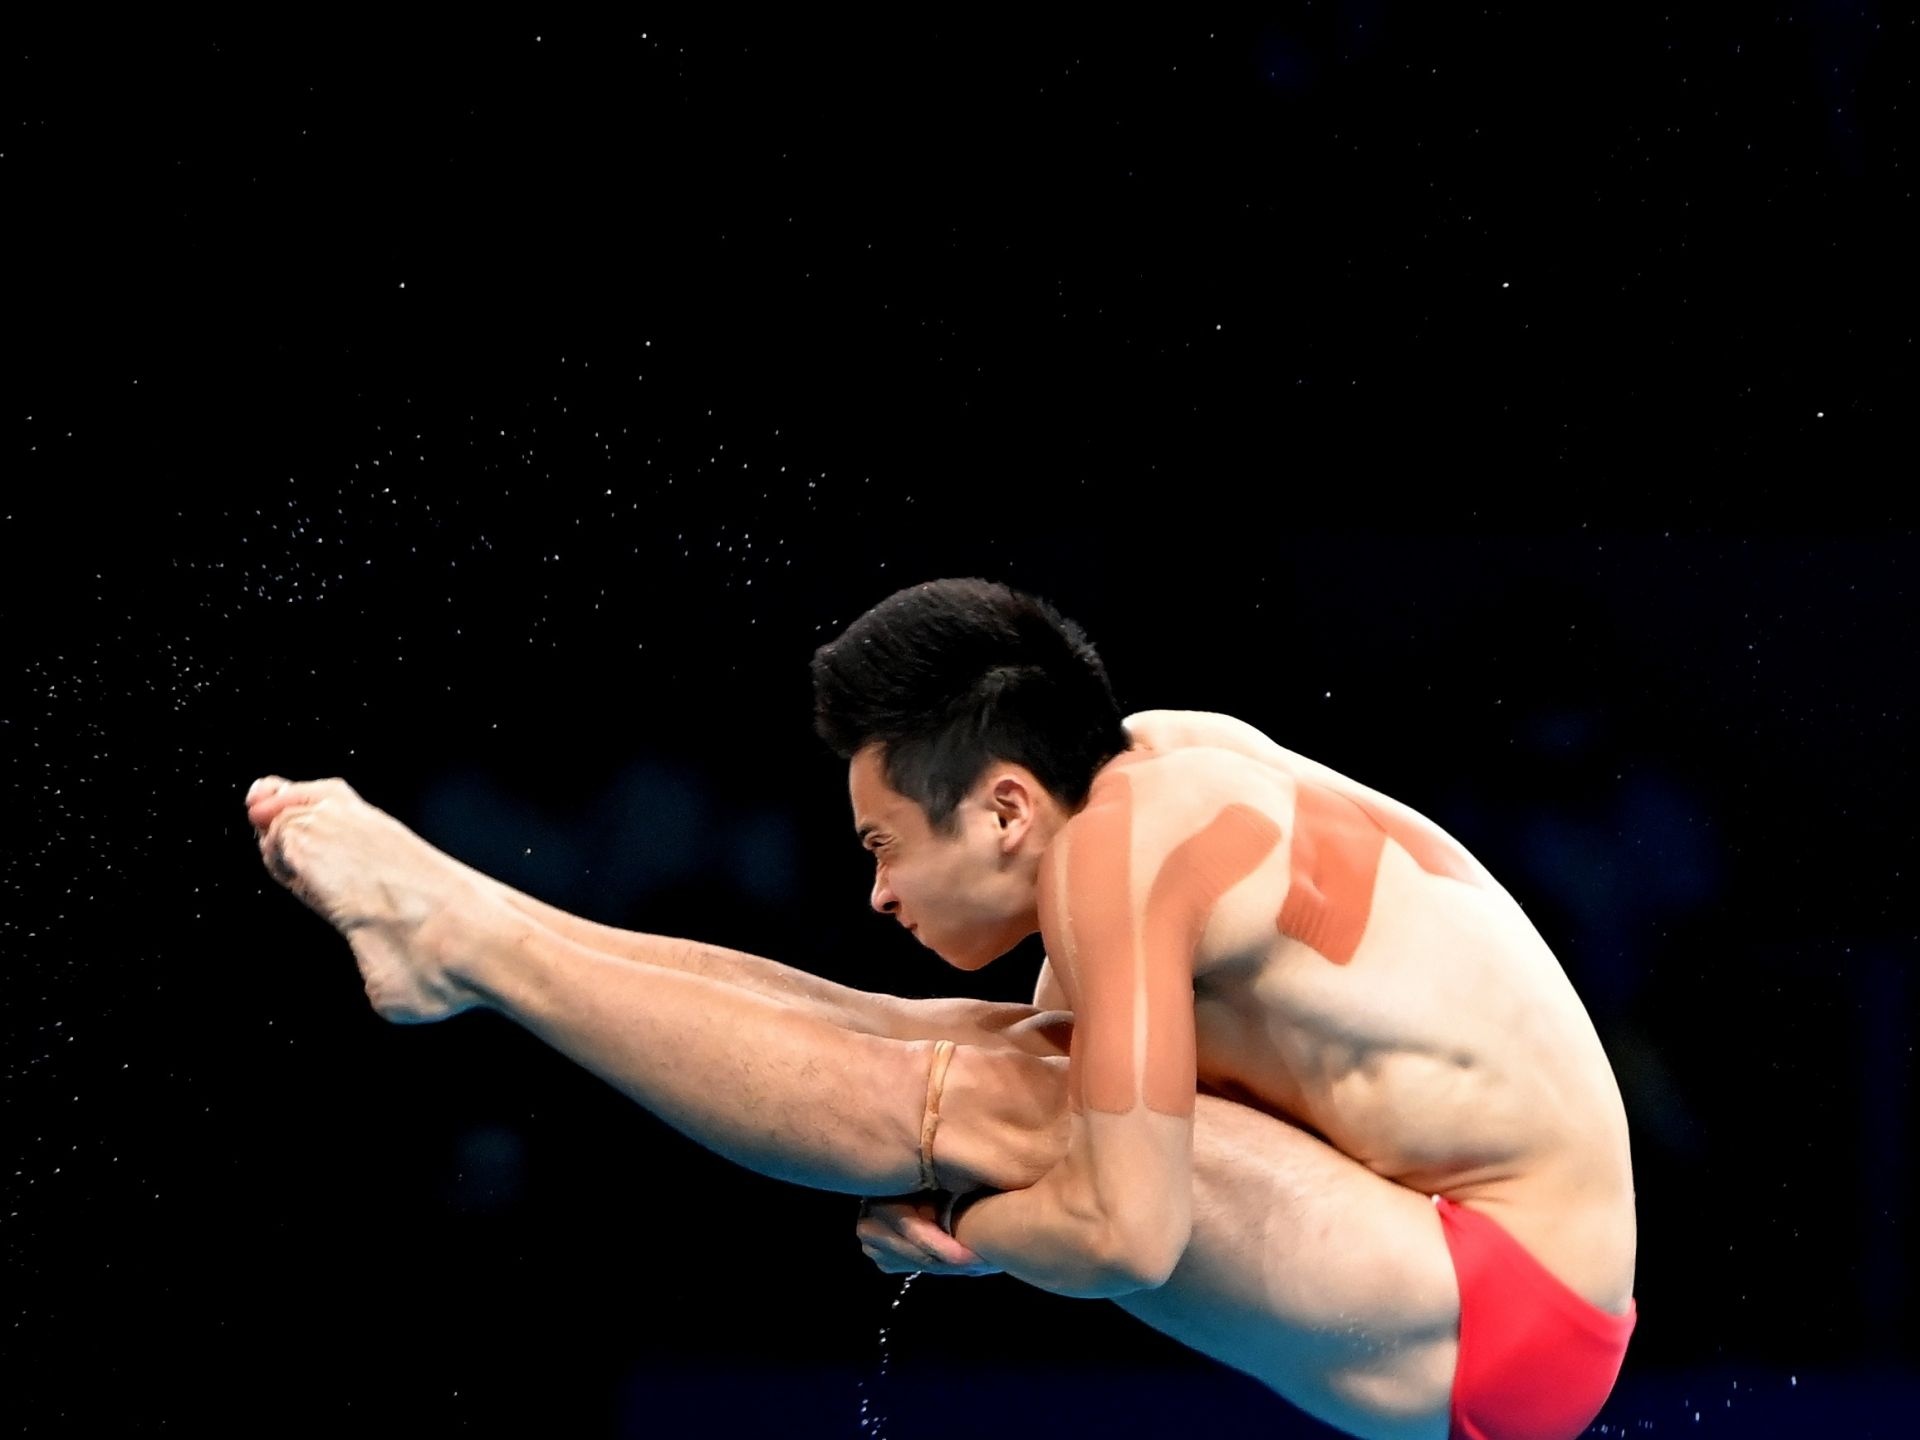 十四运会跳水男子3米板上演“群英会” 谢思埸技压群雄摘金 